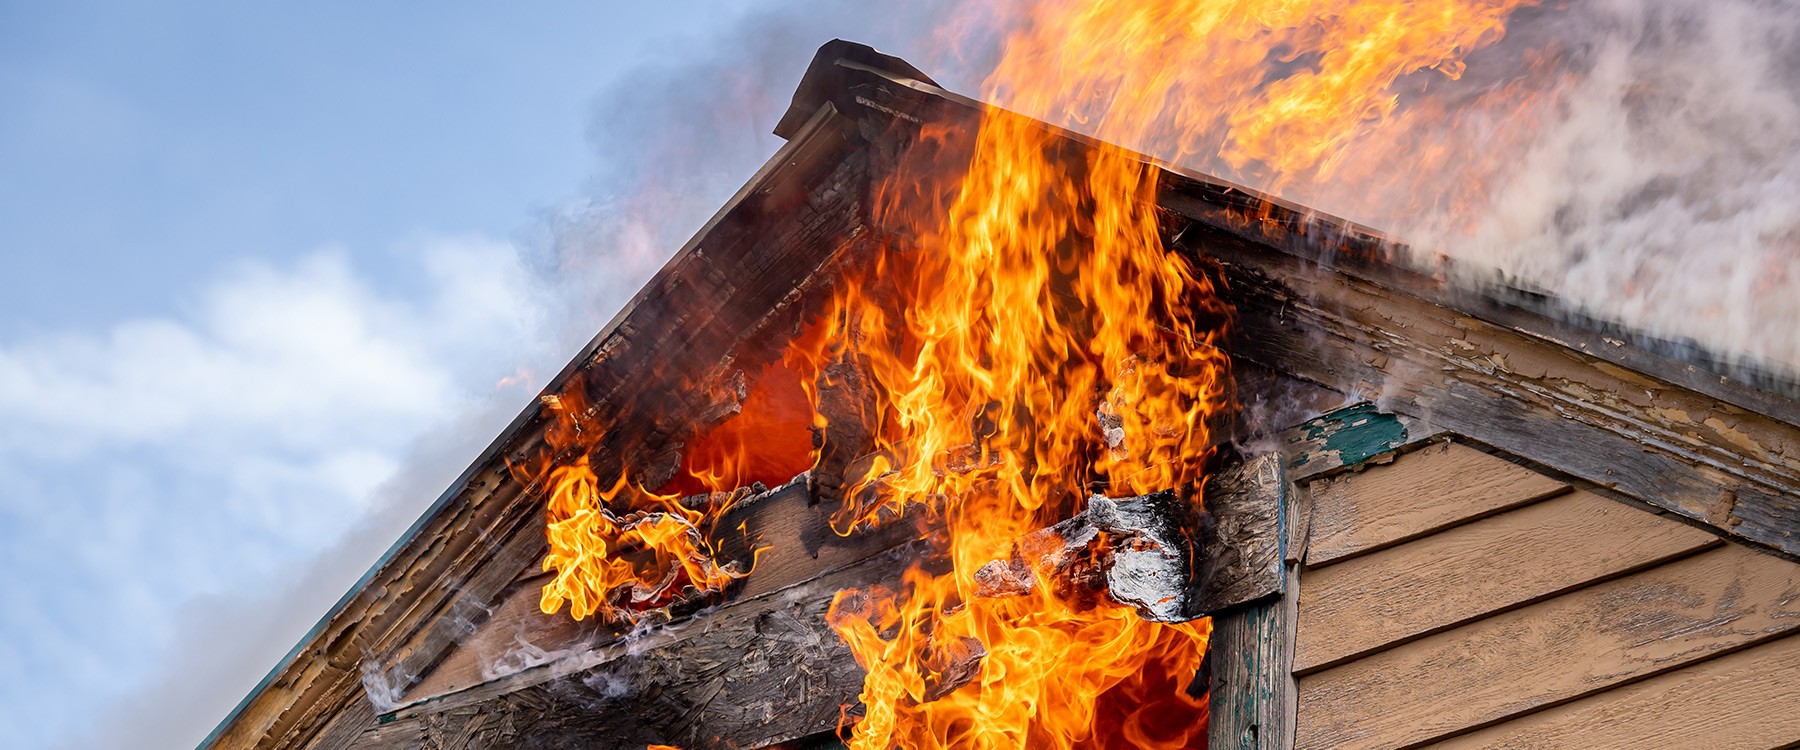 Chauffage au bois : 3 astuces pour moins polluer quand vous faites un feu  de cheminée